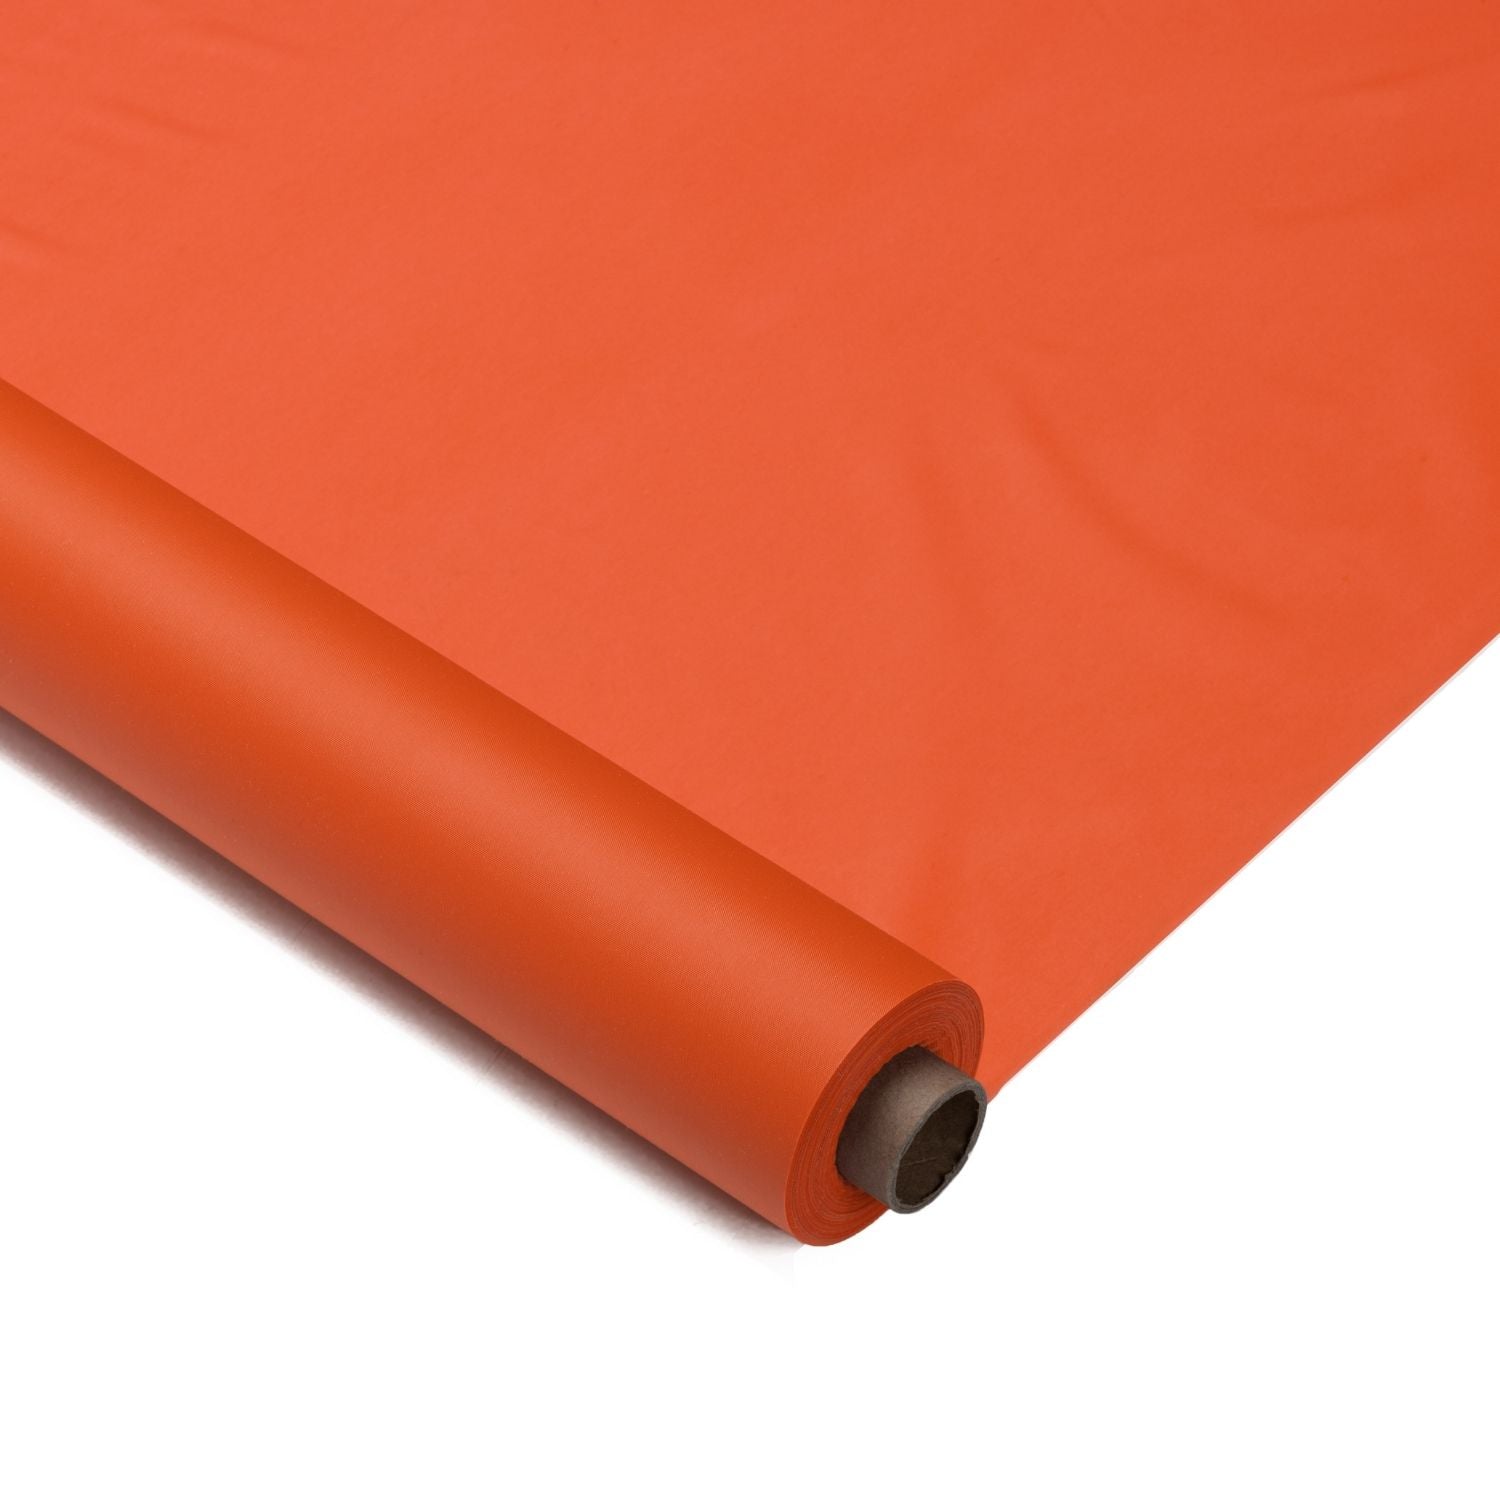 40 In. X 100 Ft. Premium Orange Plastic Table Roll | 6 Pack